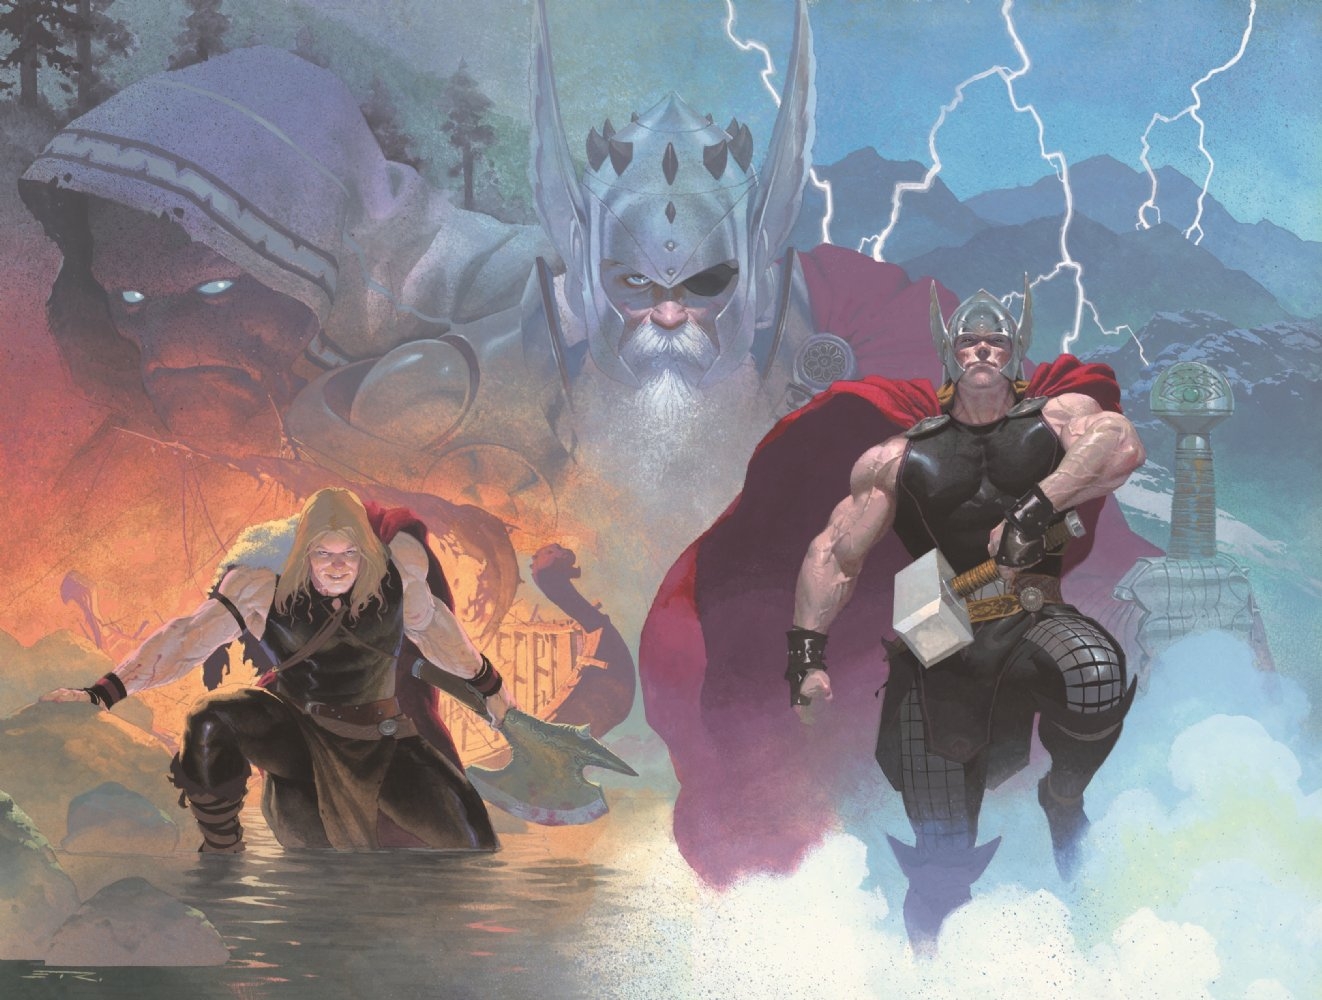 Laden Sie Thor: God Of Thunder HD-Desktop-Hintergründe herunter